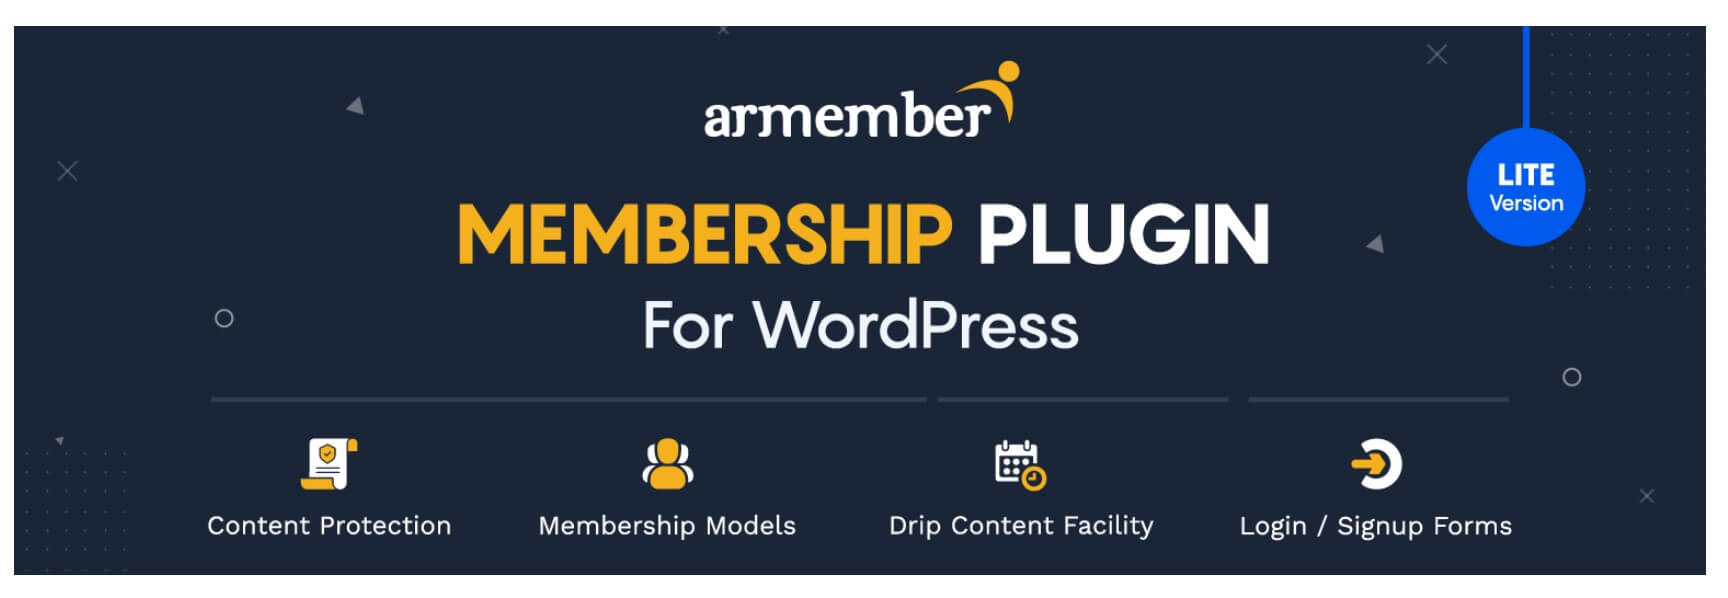 armember membership plugin for wordpress lite version homepage